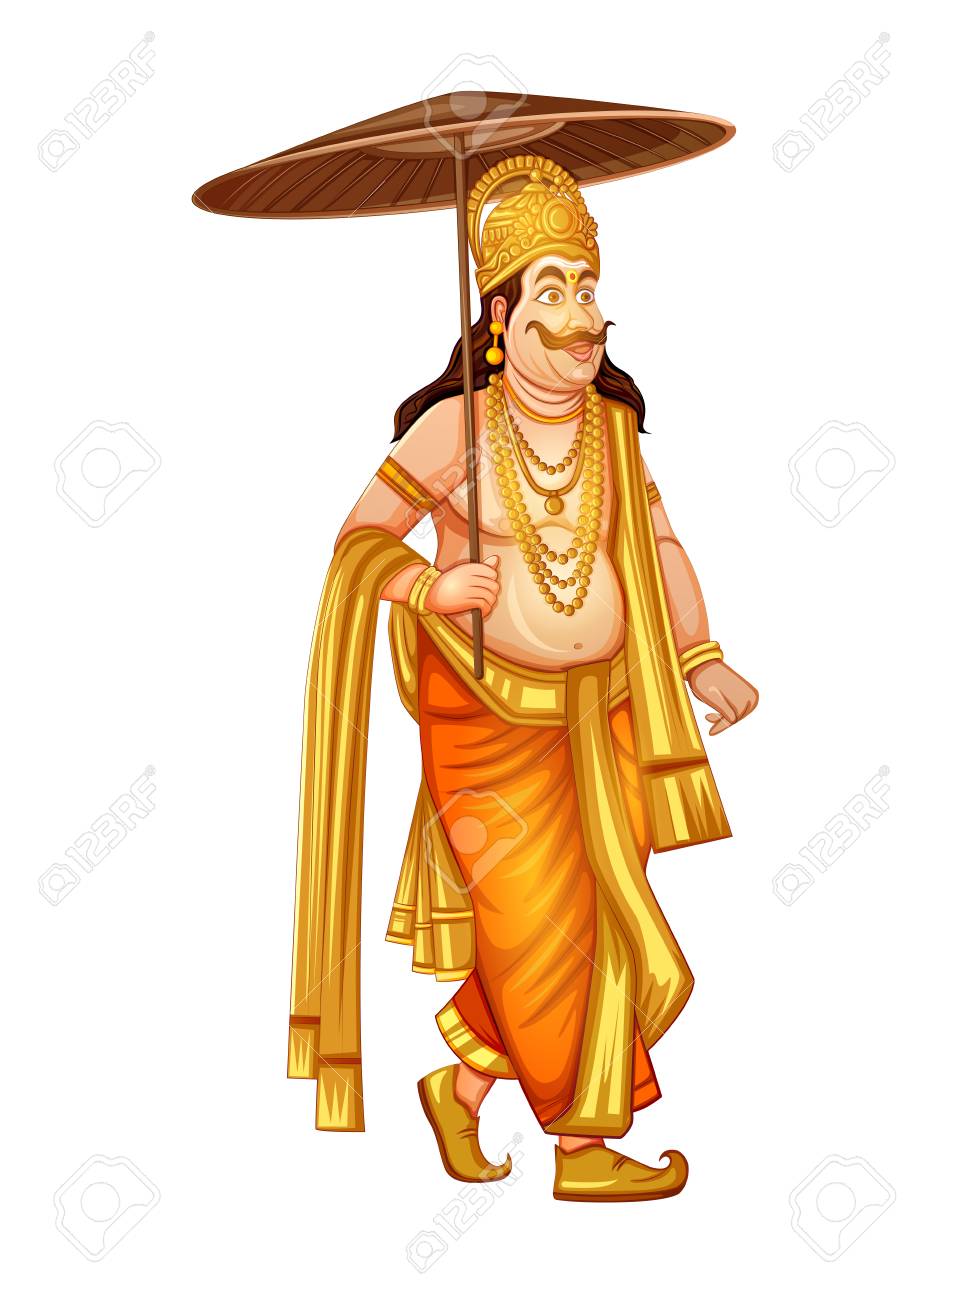 King Mahabali of Hindu mythology for South India Onam festival.